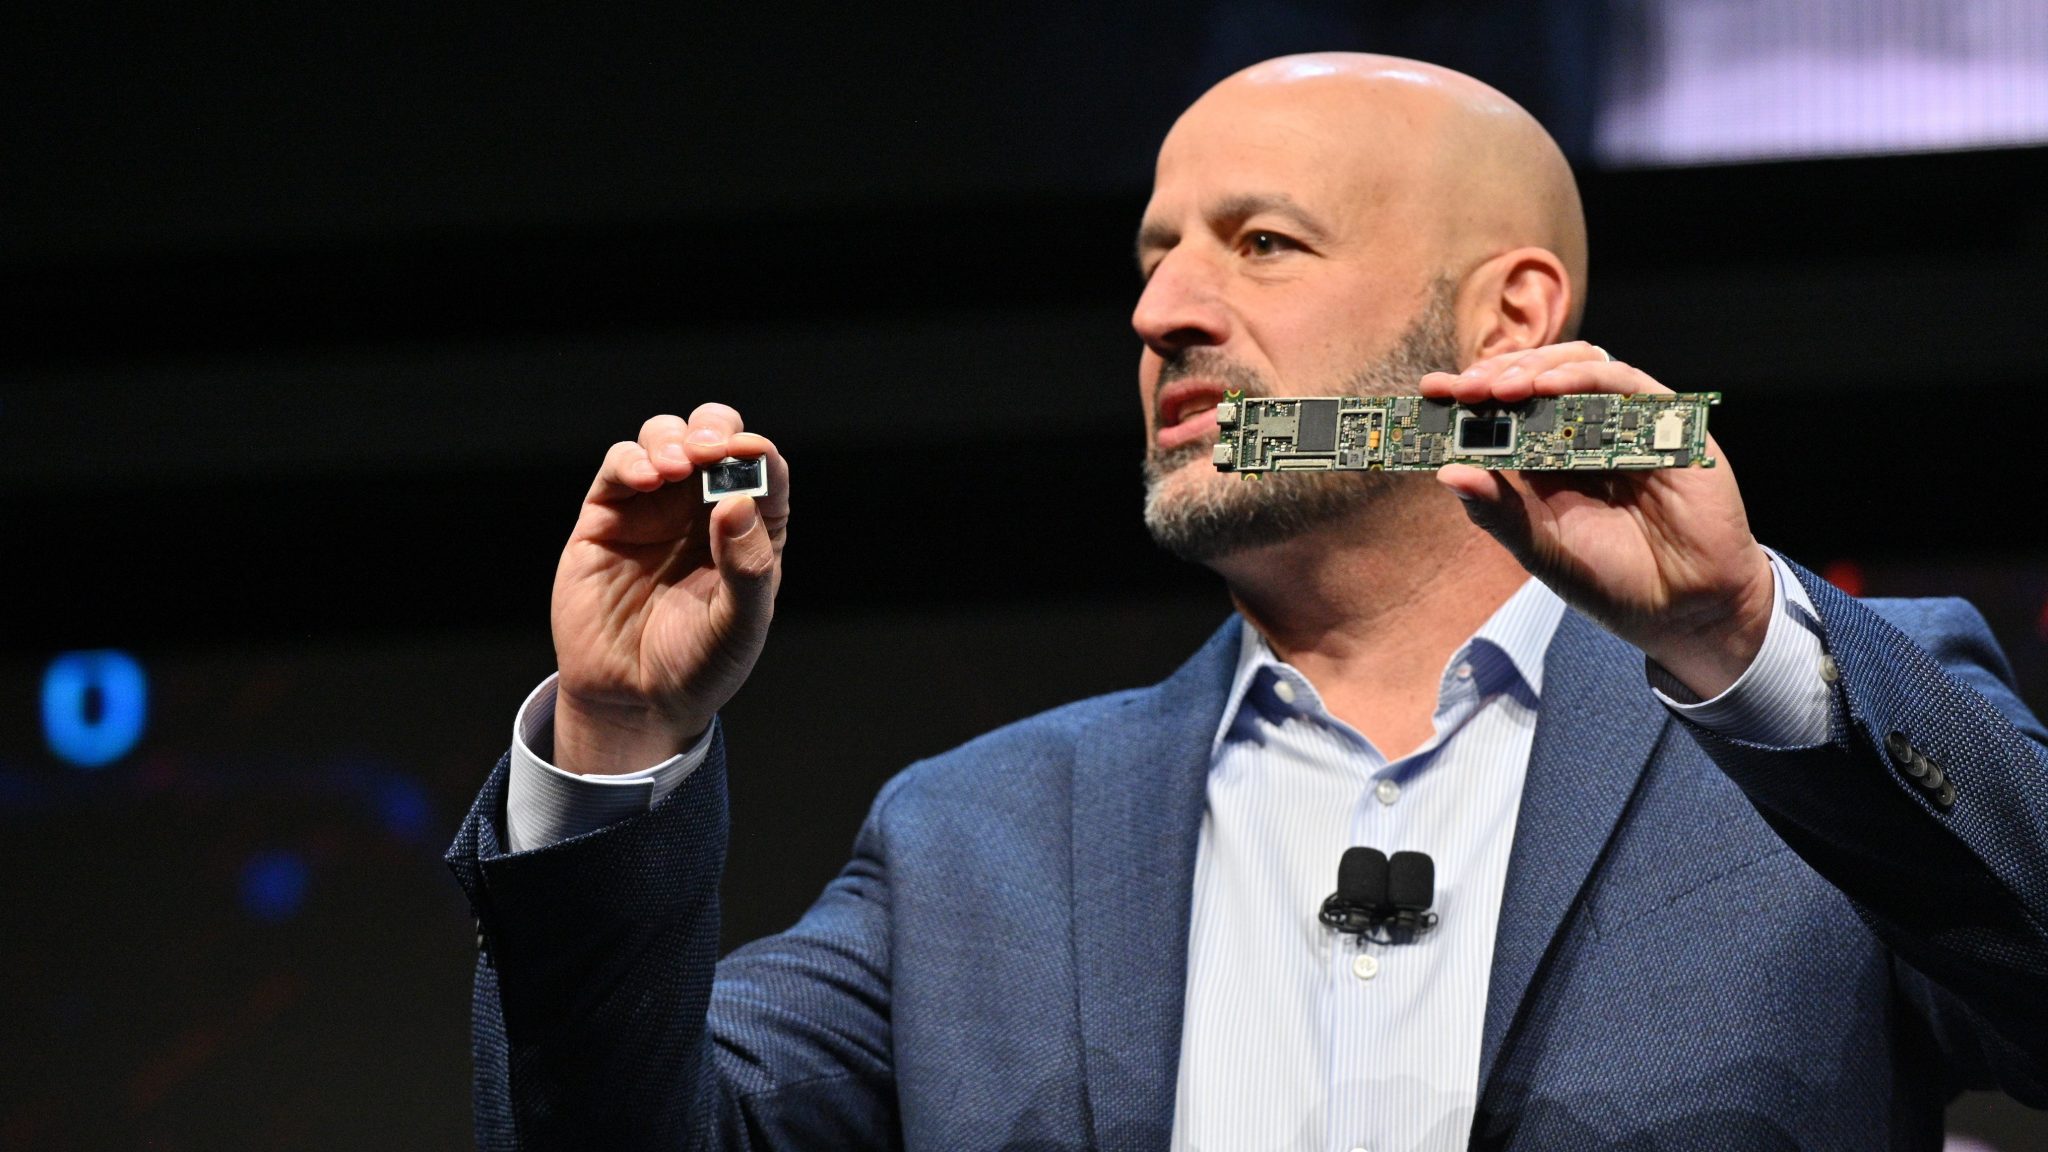 Intel bringt neue Chips, autonomes Fahren und künstliche Intelligenz auf die CES 2020